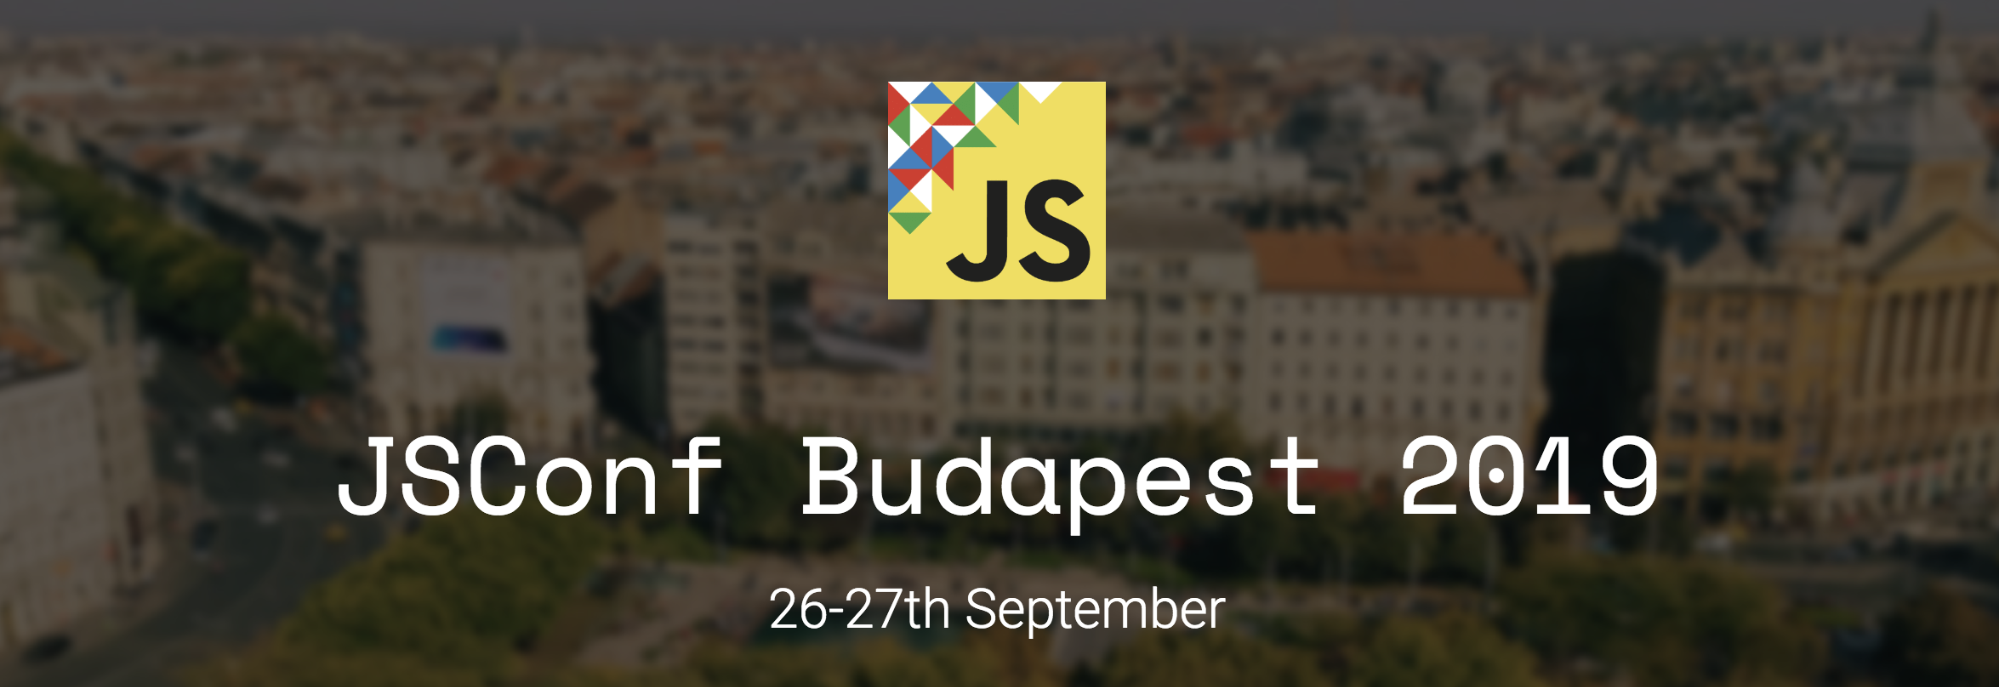 JSConf Budapest